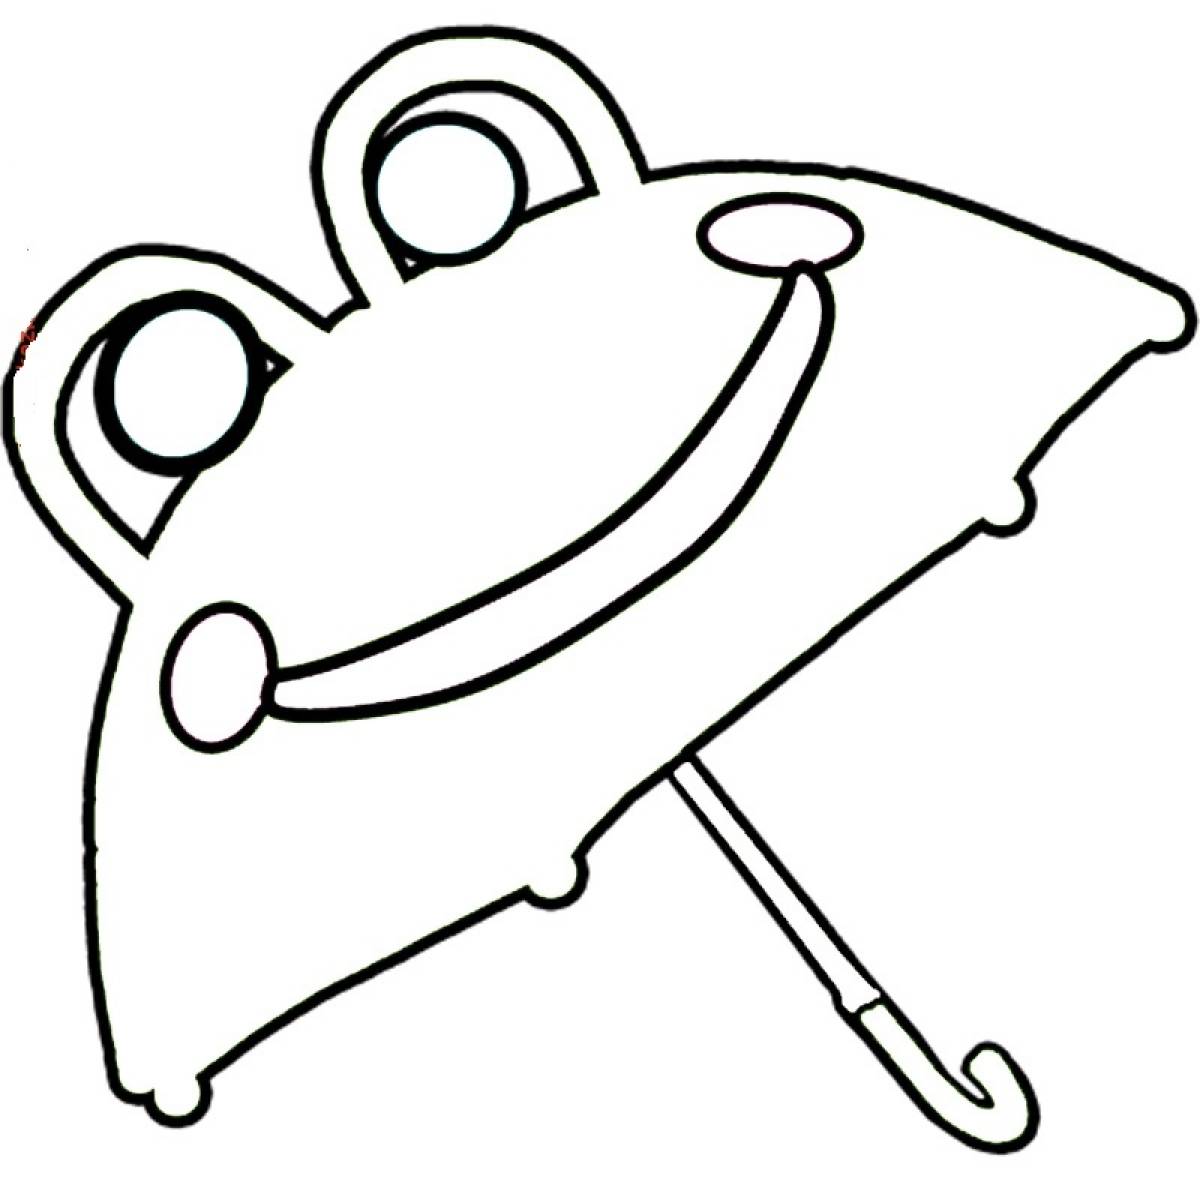 Umbrella frog